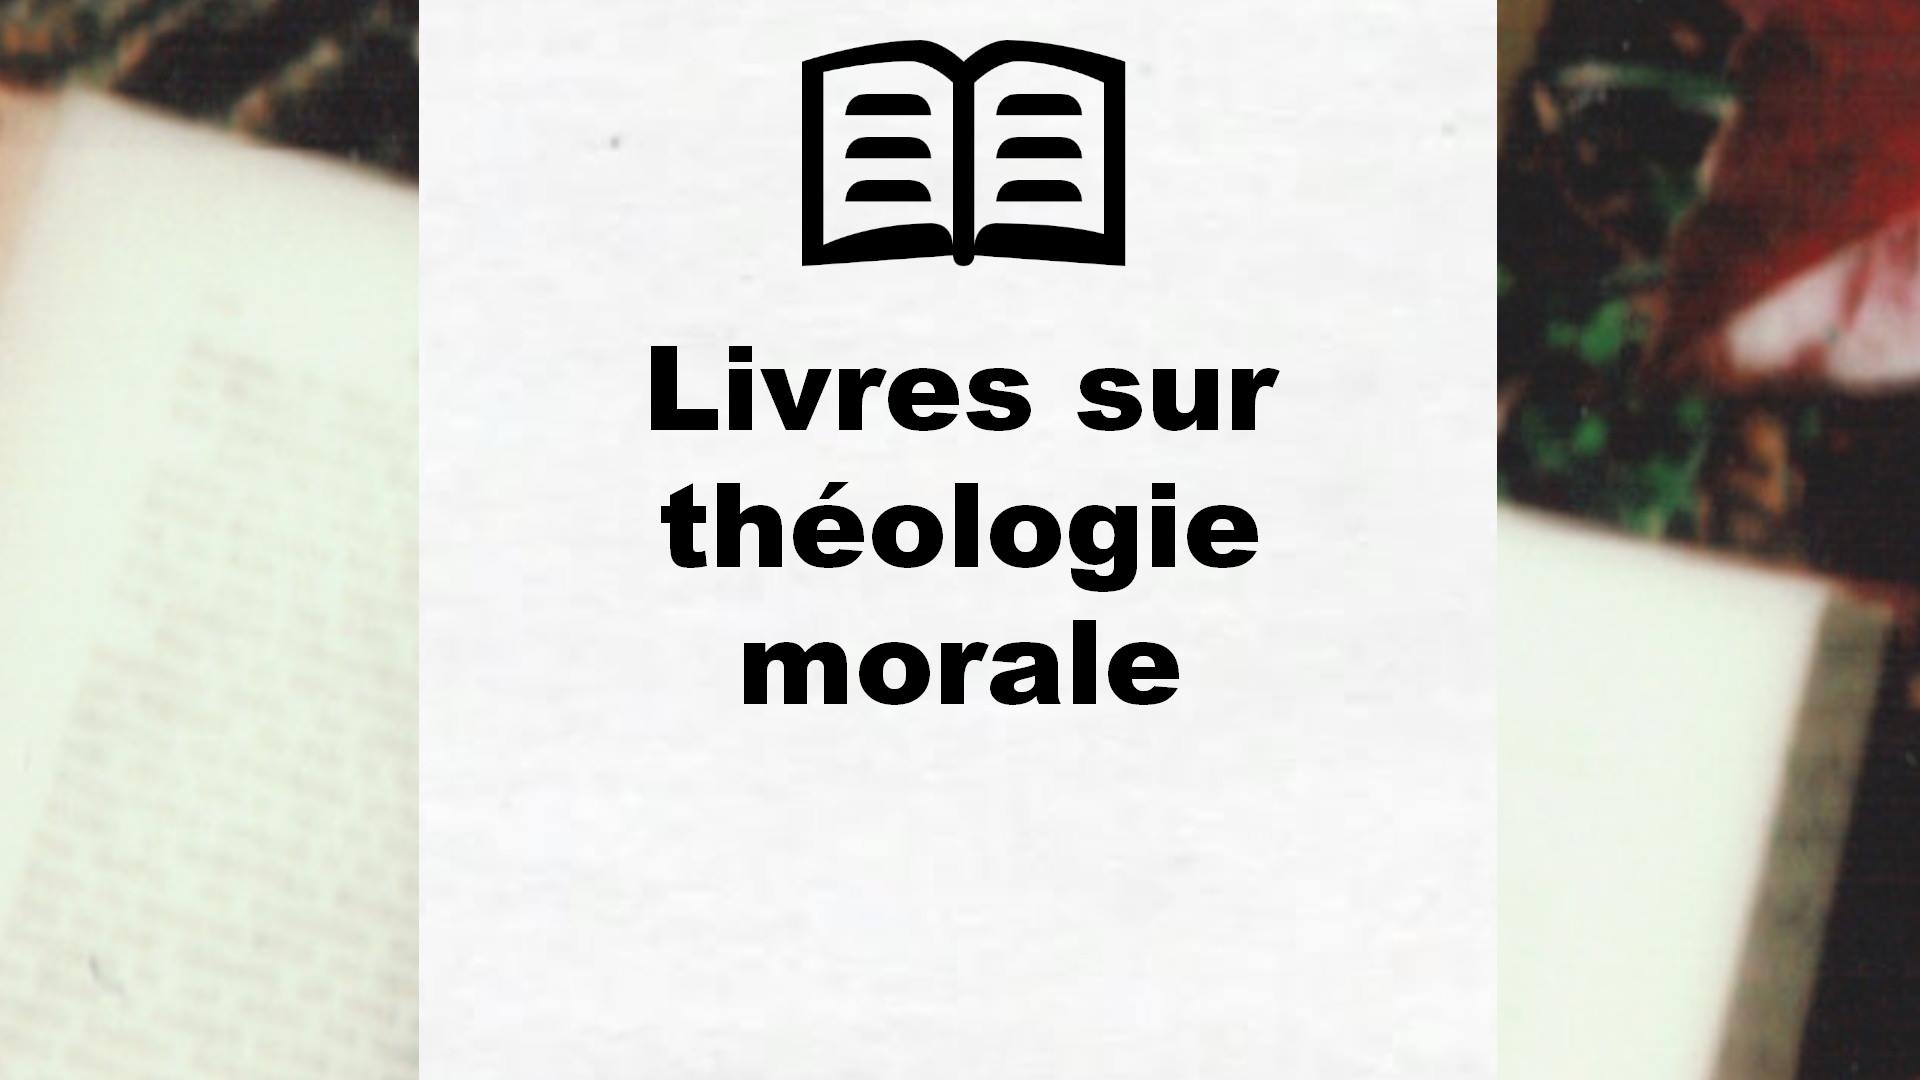 Livres sur théologie morale